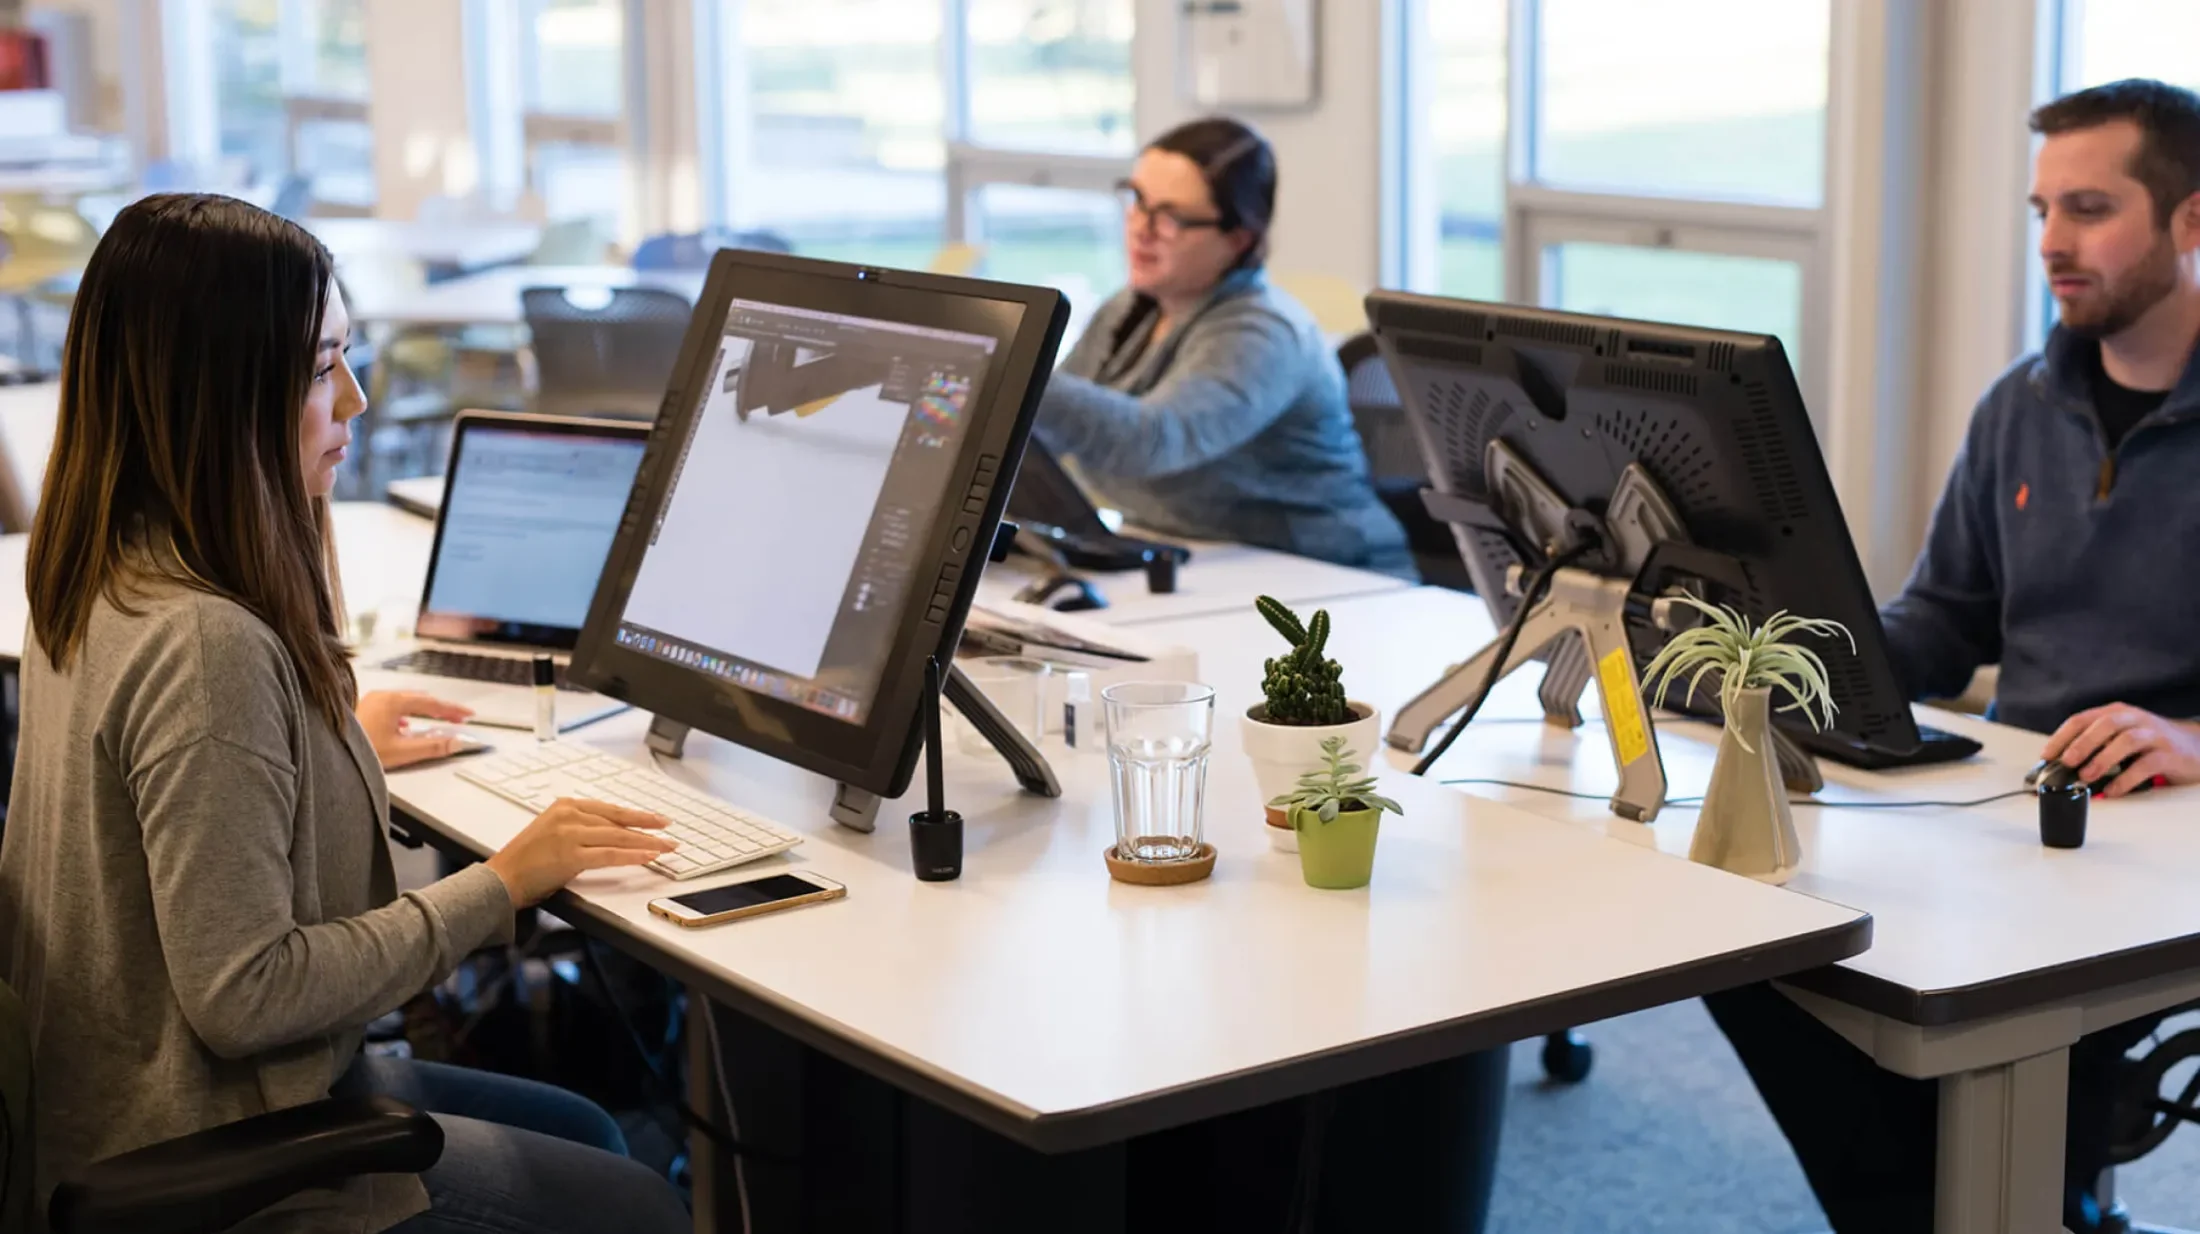 Three people at adjacent desks working on design tablets